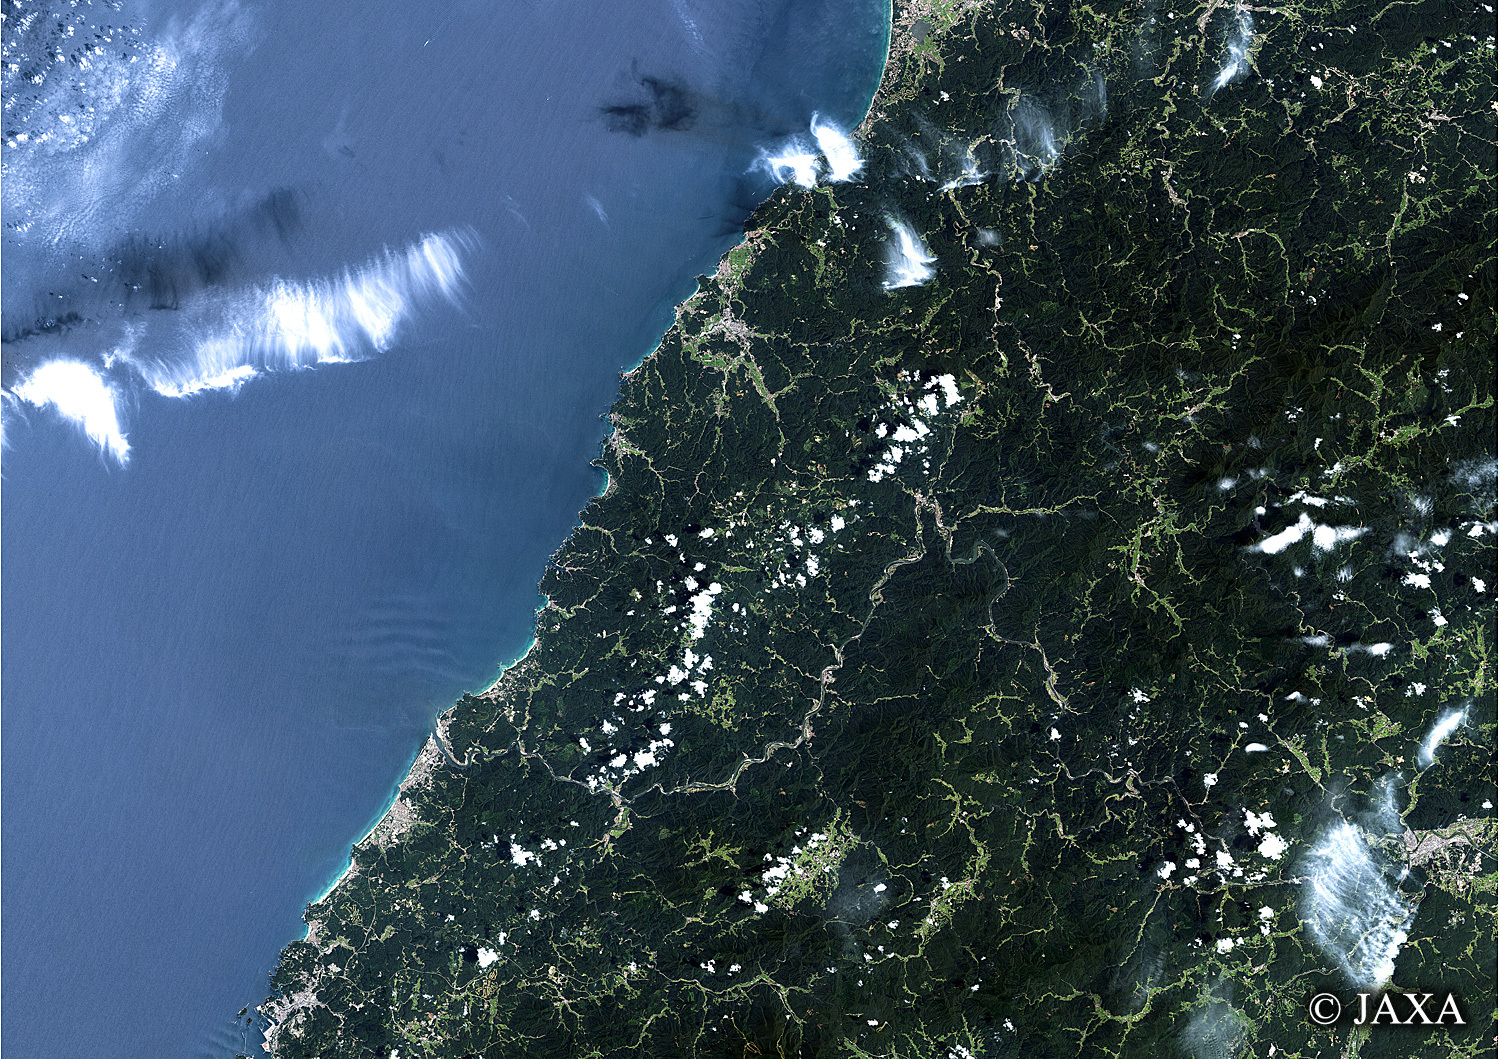 だいちから見た日本の都市 益田市:衛星画像